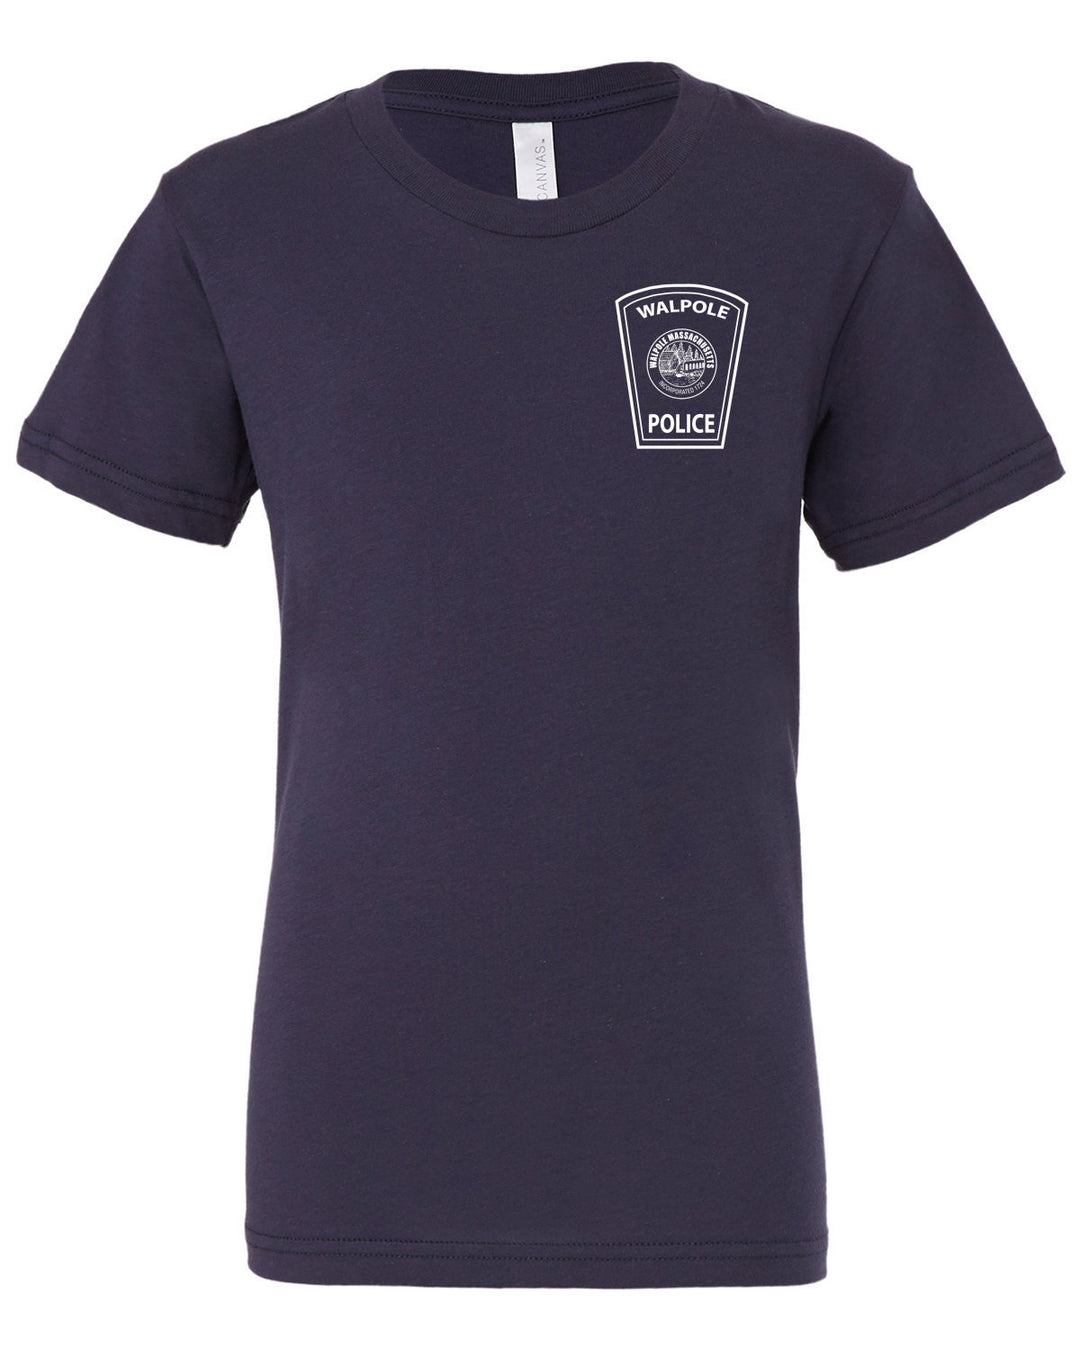 WPD 115 Youth T-Shirt (3001Y)